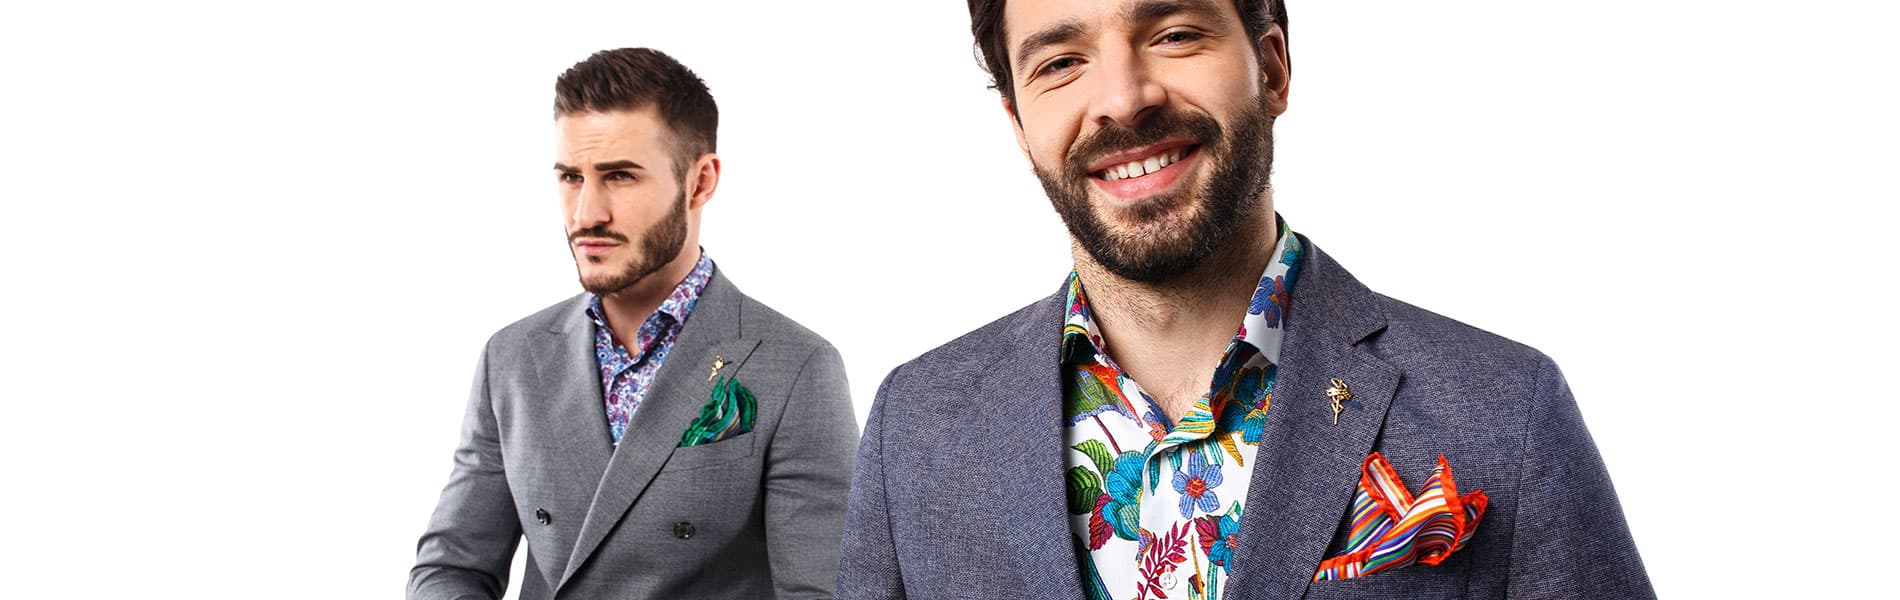 Мужские итальянские пиджаки: виды и их особенности